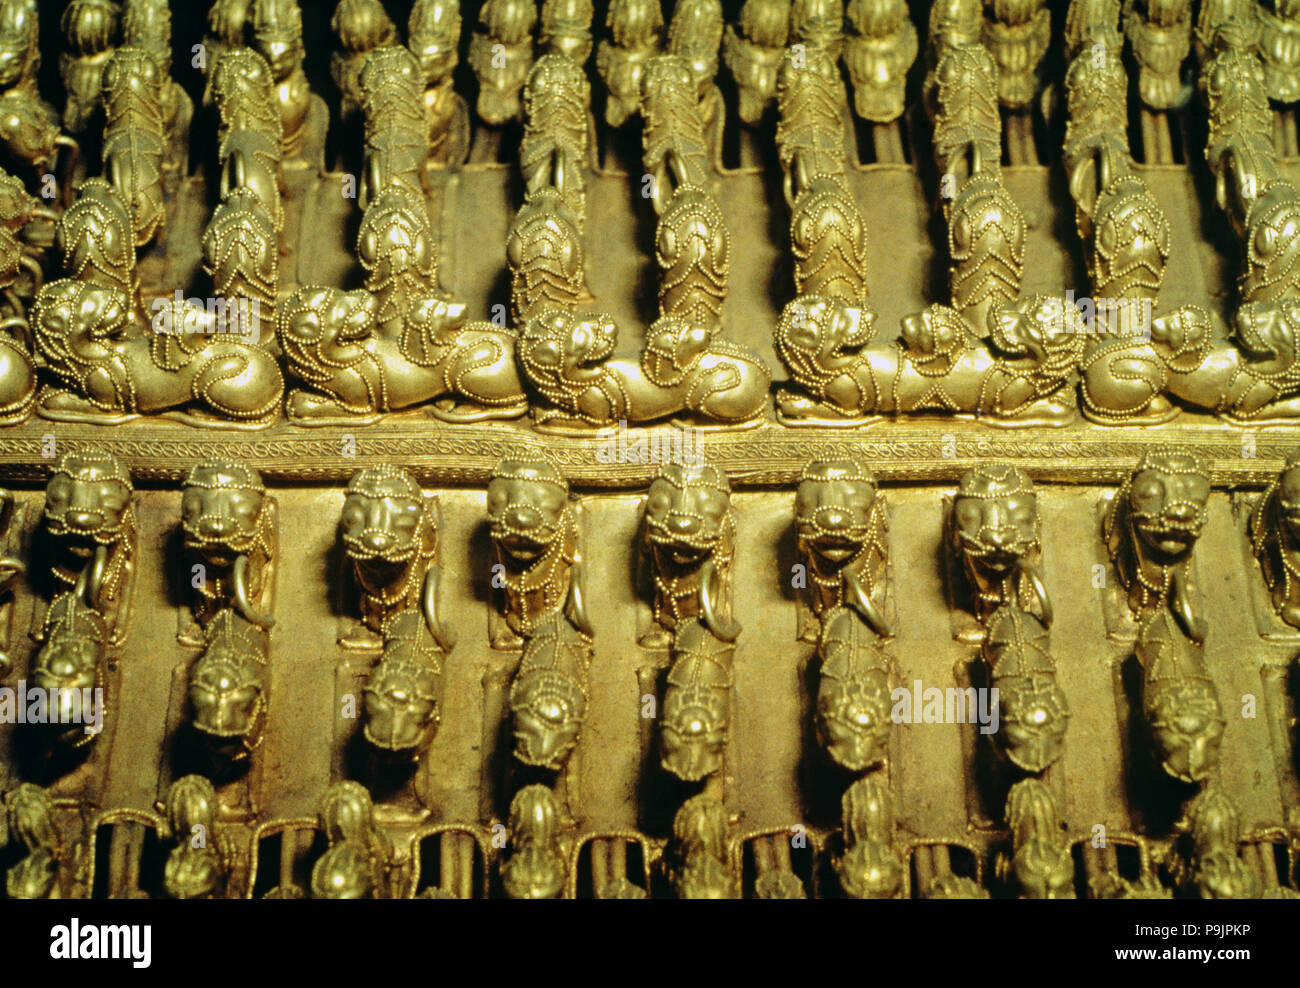 Détail d'un pectoral en or de forme ronde avec des figures zoomorphes. Banque D'Images